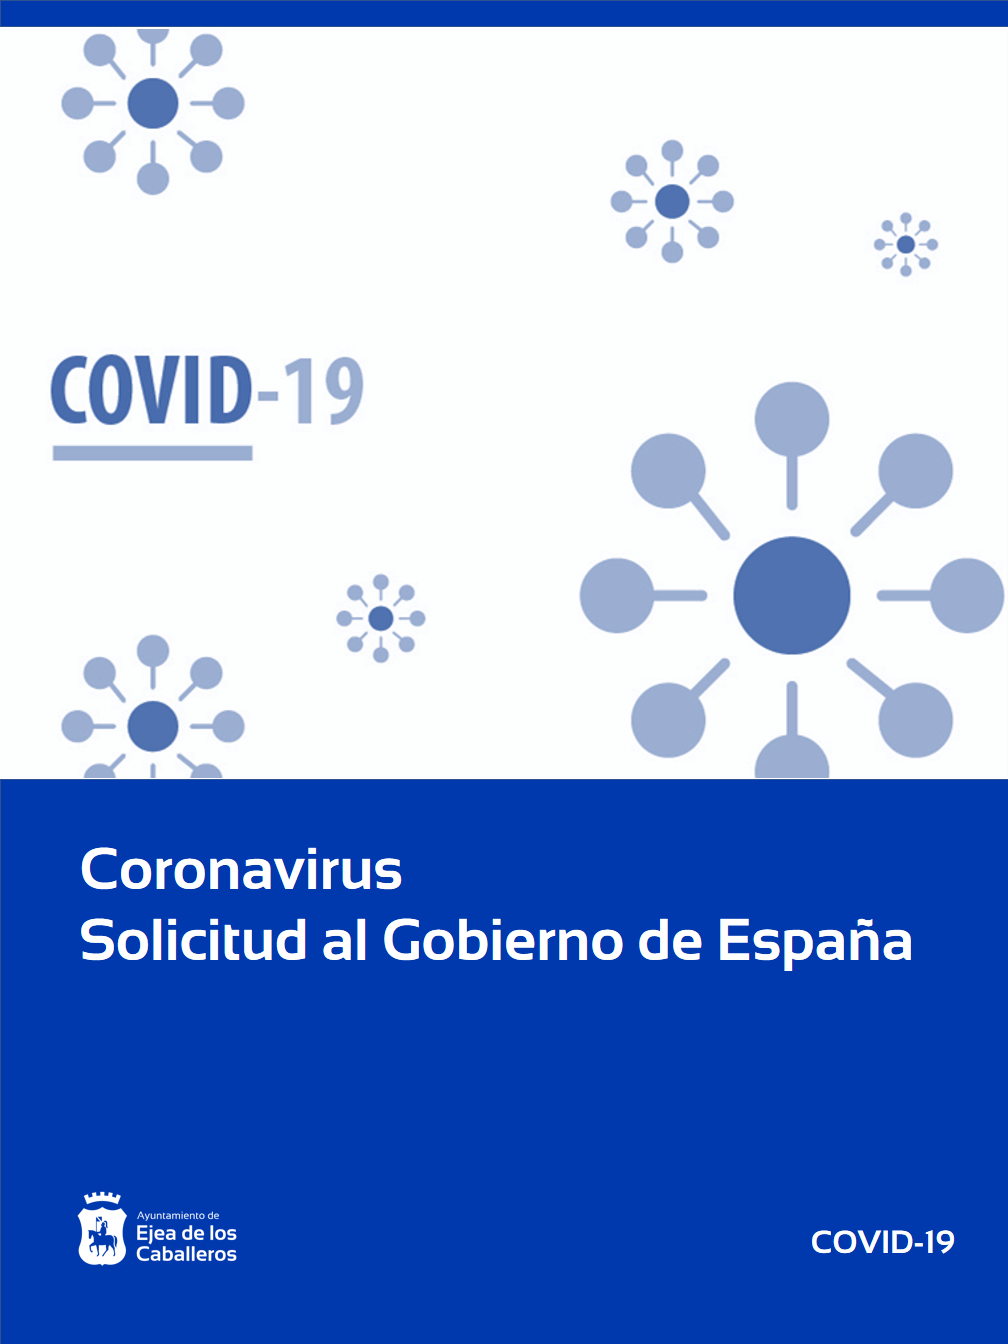 En este momento estás viendo El Ayuntamiento de Ejea de los Caballeros solicita ayuda al Gobierno de España para luchar contra la crisis económica derivada del COVID-19